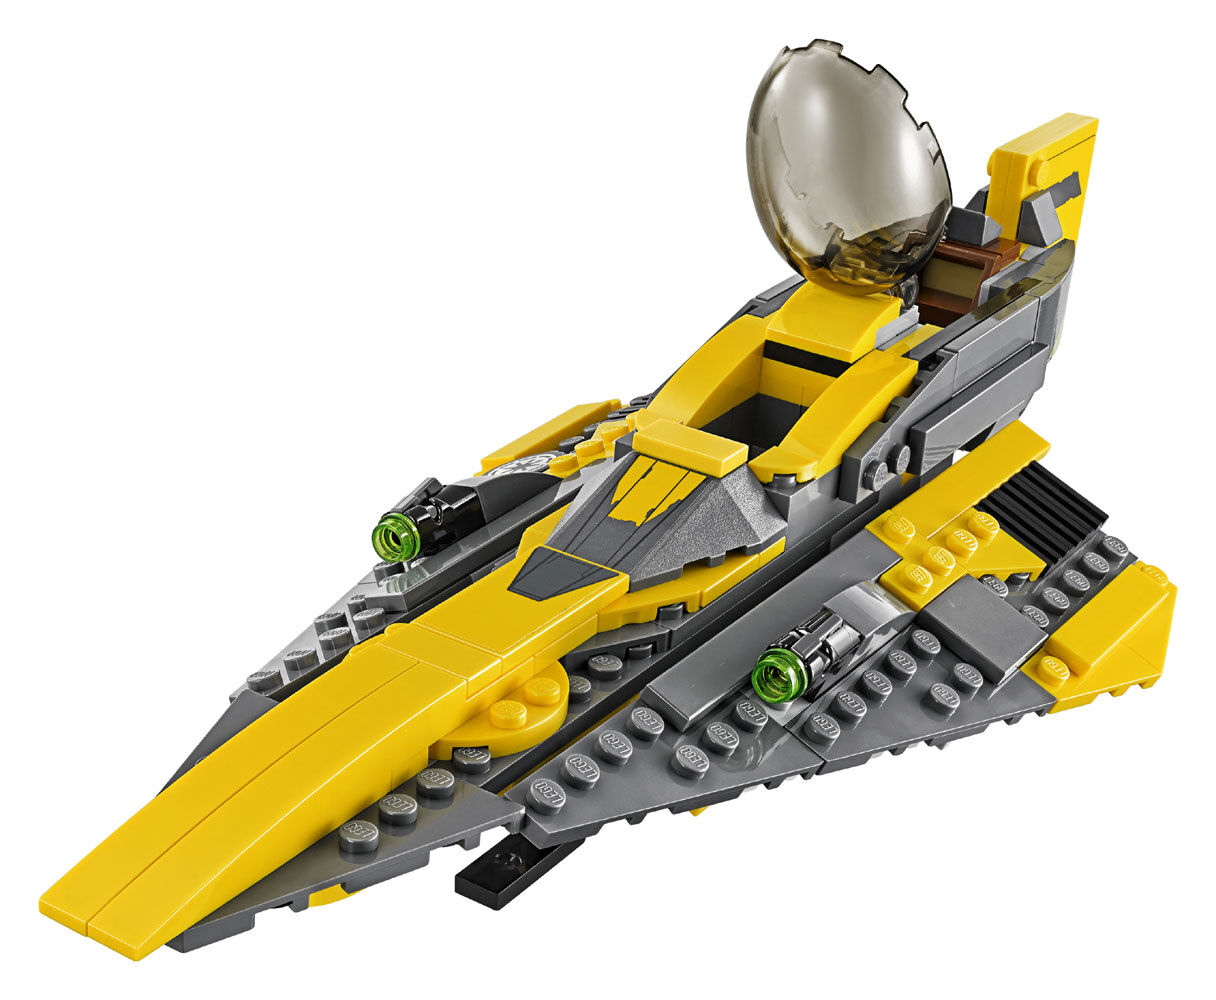 anakin skywalker lego ship